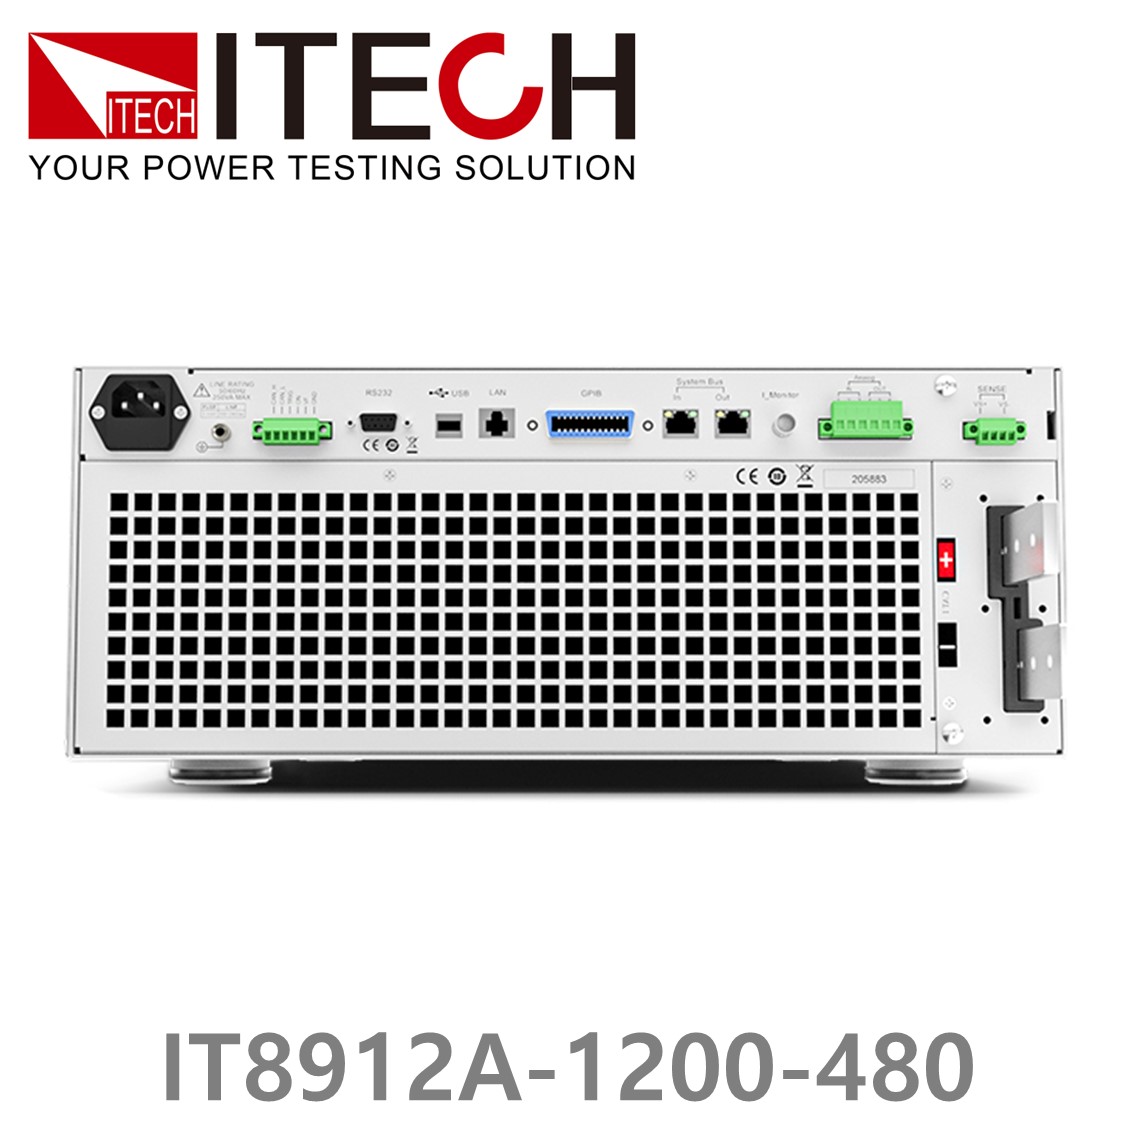 [ ITECH ] IT8912A-1200-480  고성능 고전력 DC 전자로드 1200V/480A/12kW (8U)